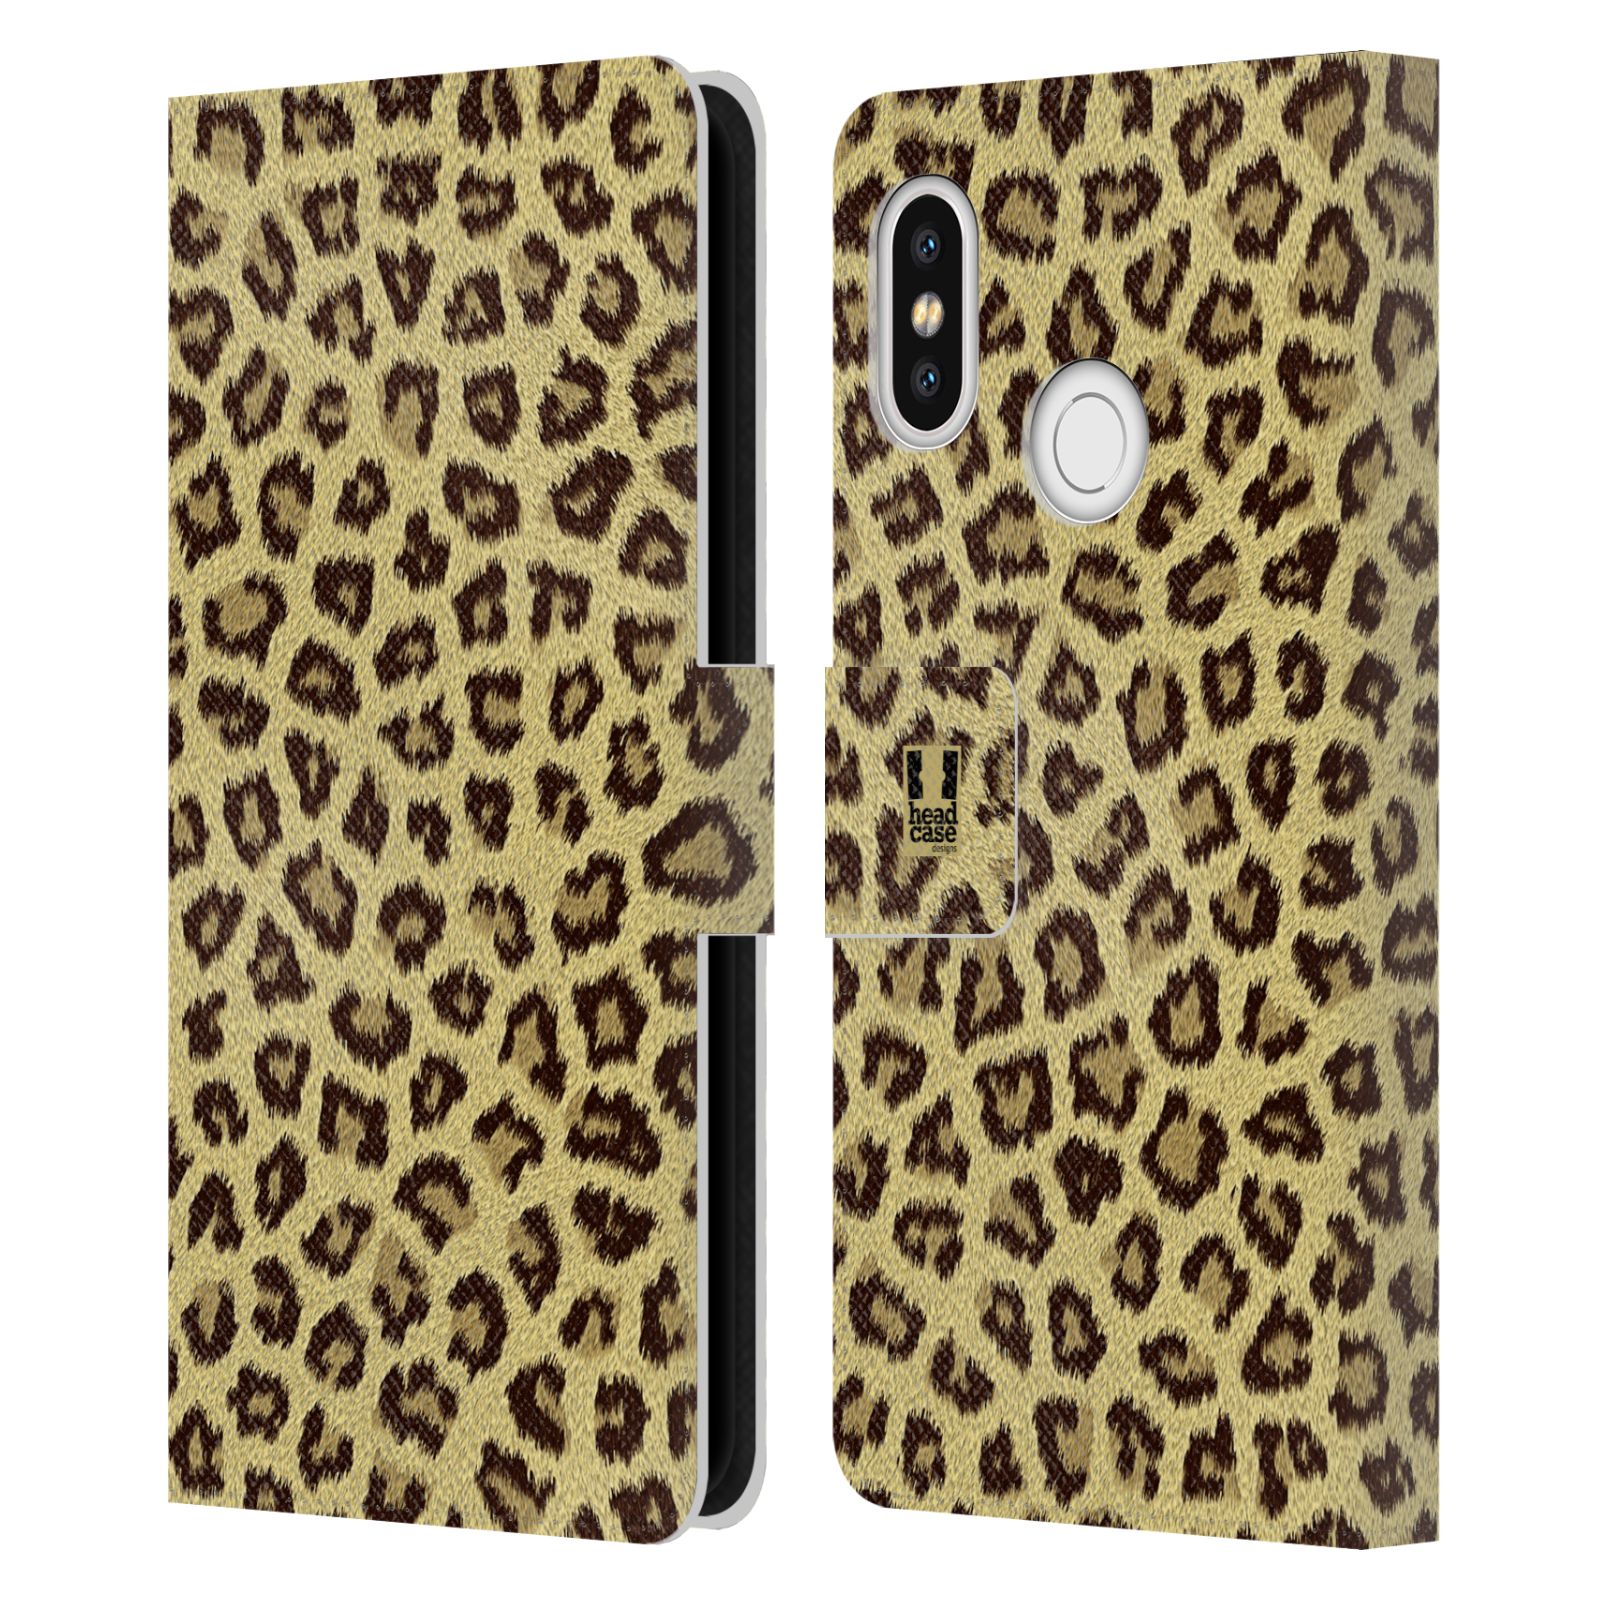 HEAD CASE Flipové pouzdro pro mobil Xiaomi Mi 8 zvíře srst divoká kolekce jaguár, gepard